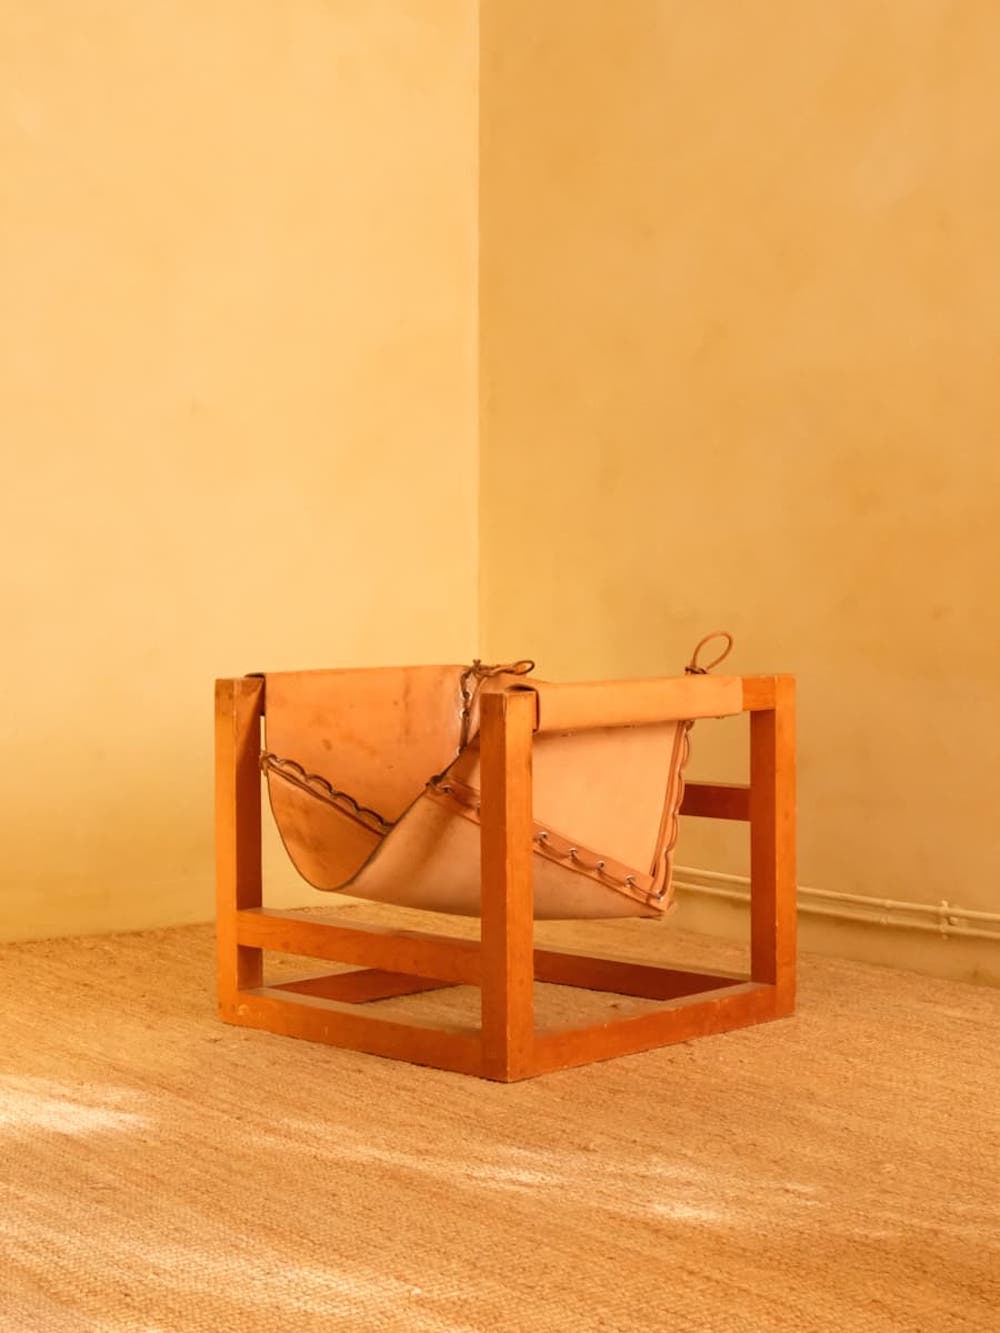 Chaise longue Modèle Tail 4 avec structure en bois, articulation à broches en métal, cuir de terre cuite et sangles en cuir, conçue et fabriquée par le designer allemand Heinz Witthoeft en 1959 pour Witthoeft, Stuttgart. 

La chaise longue modèle